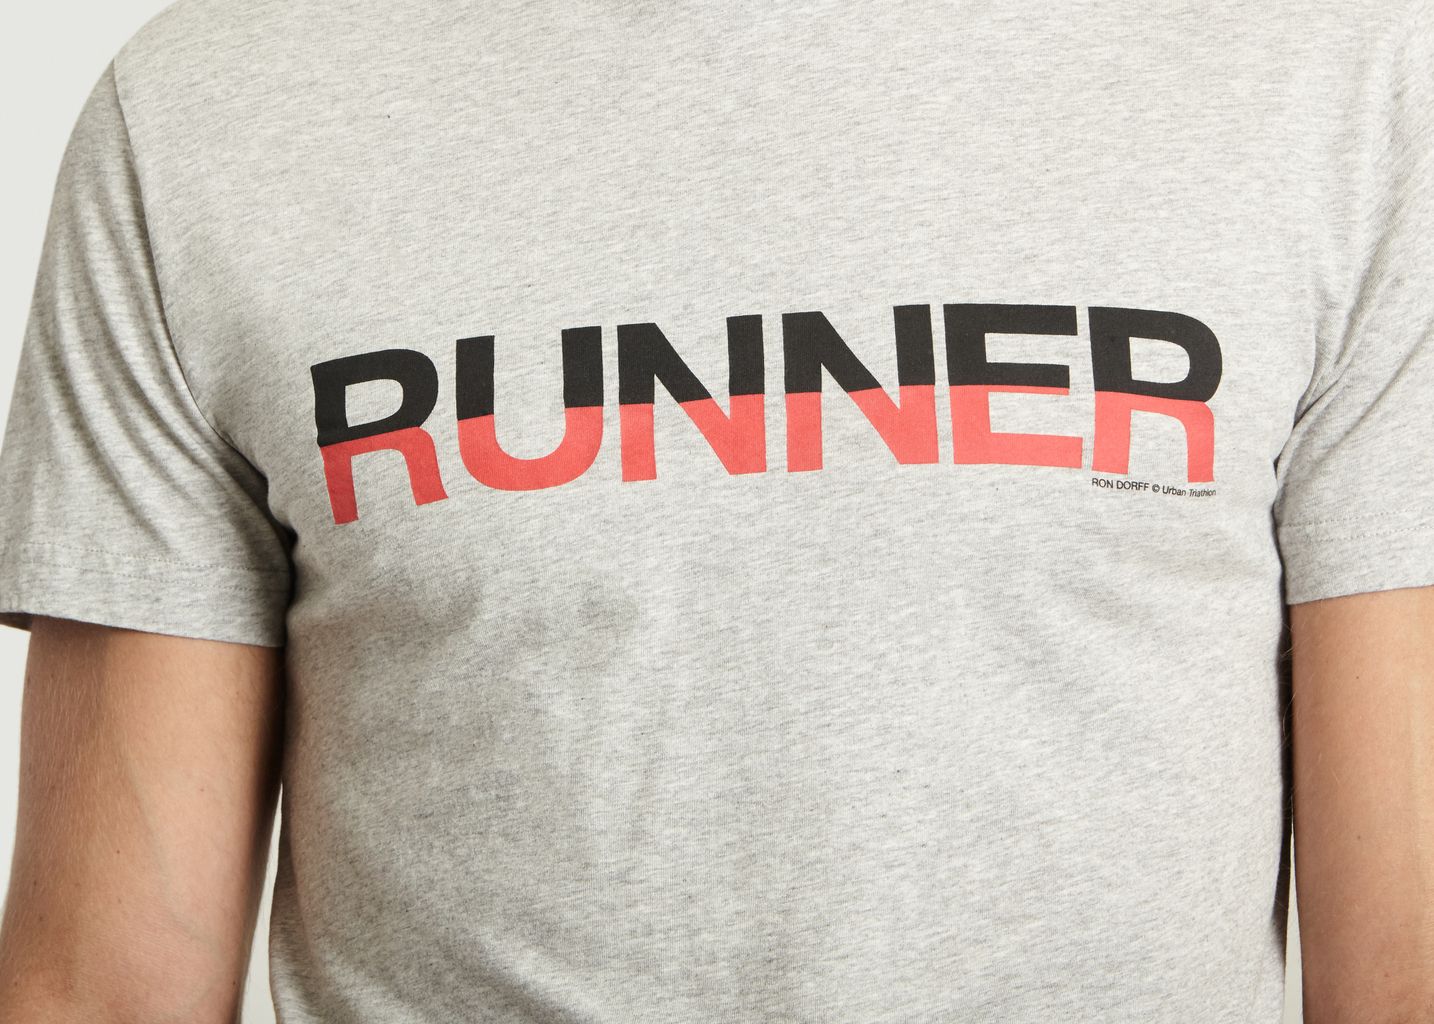 T-shirt Runner - Ron Dorff